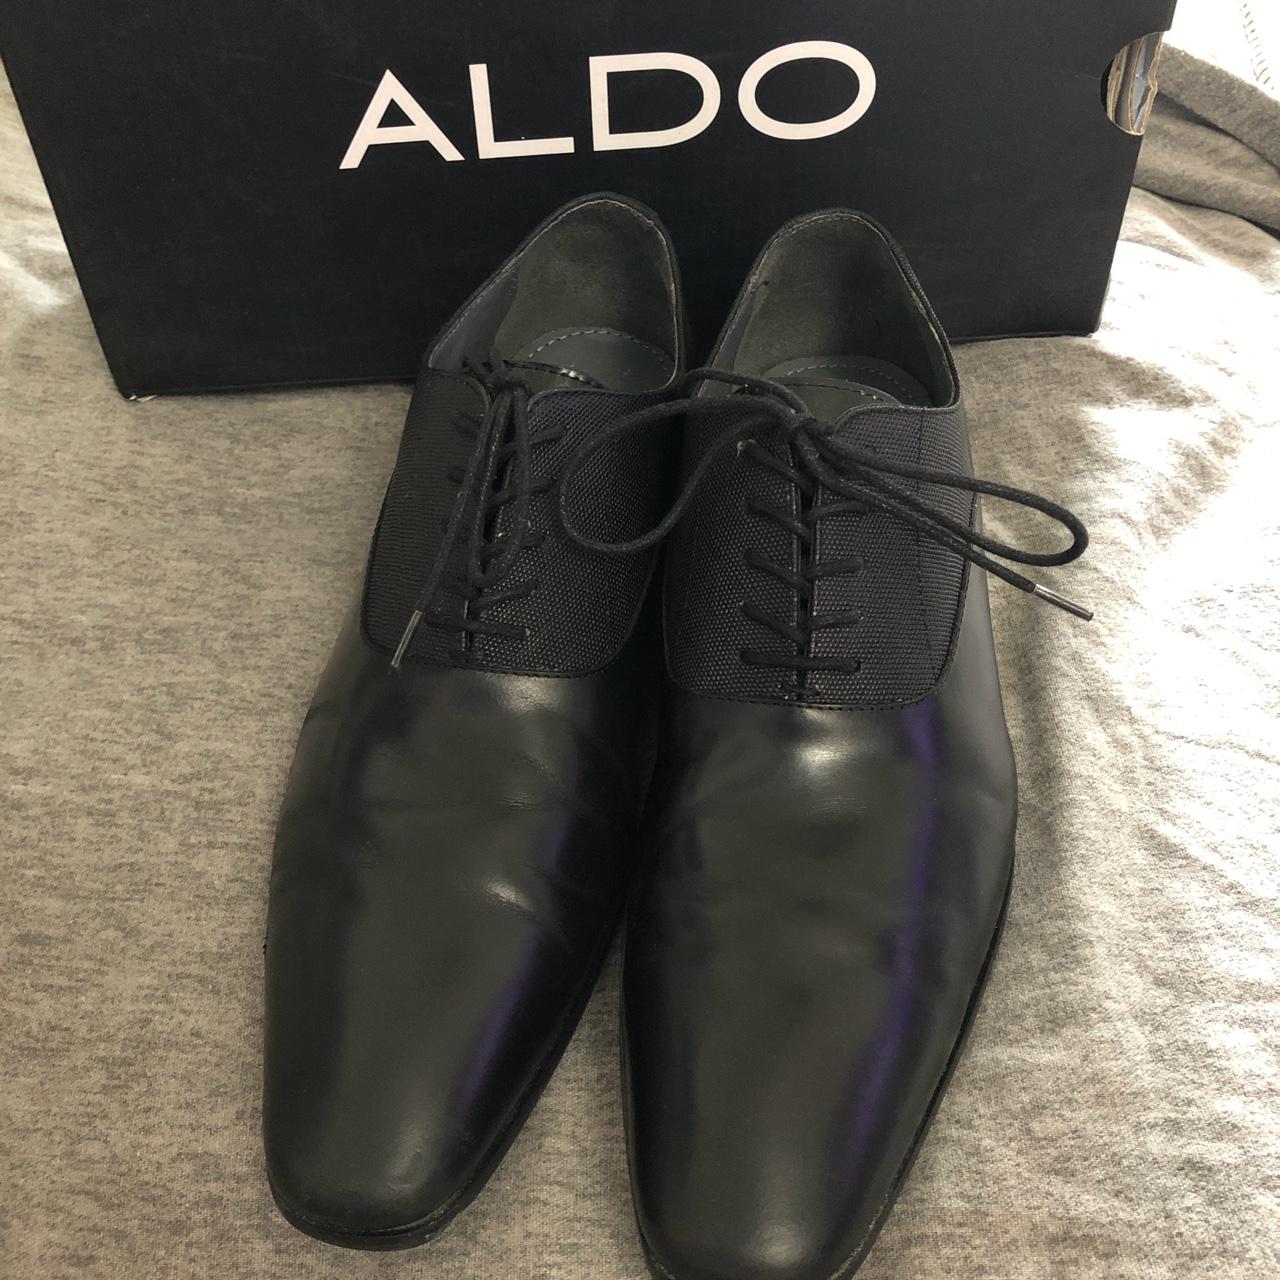 aldo dress shoes